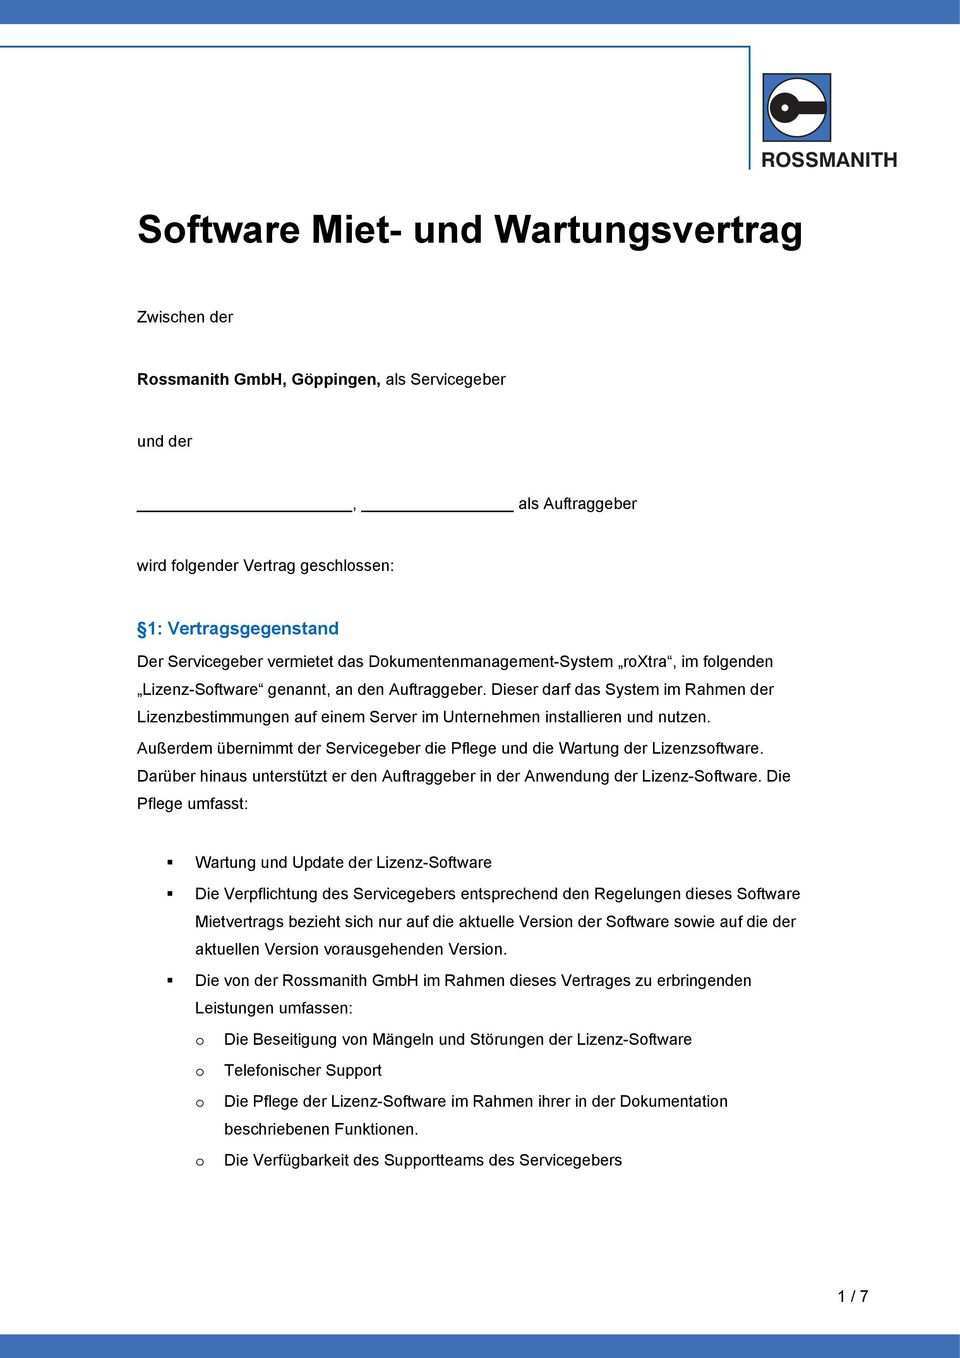 Software Miet Und Wartungsvertrag Pdf Free Download